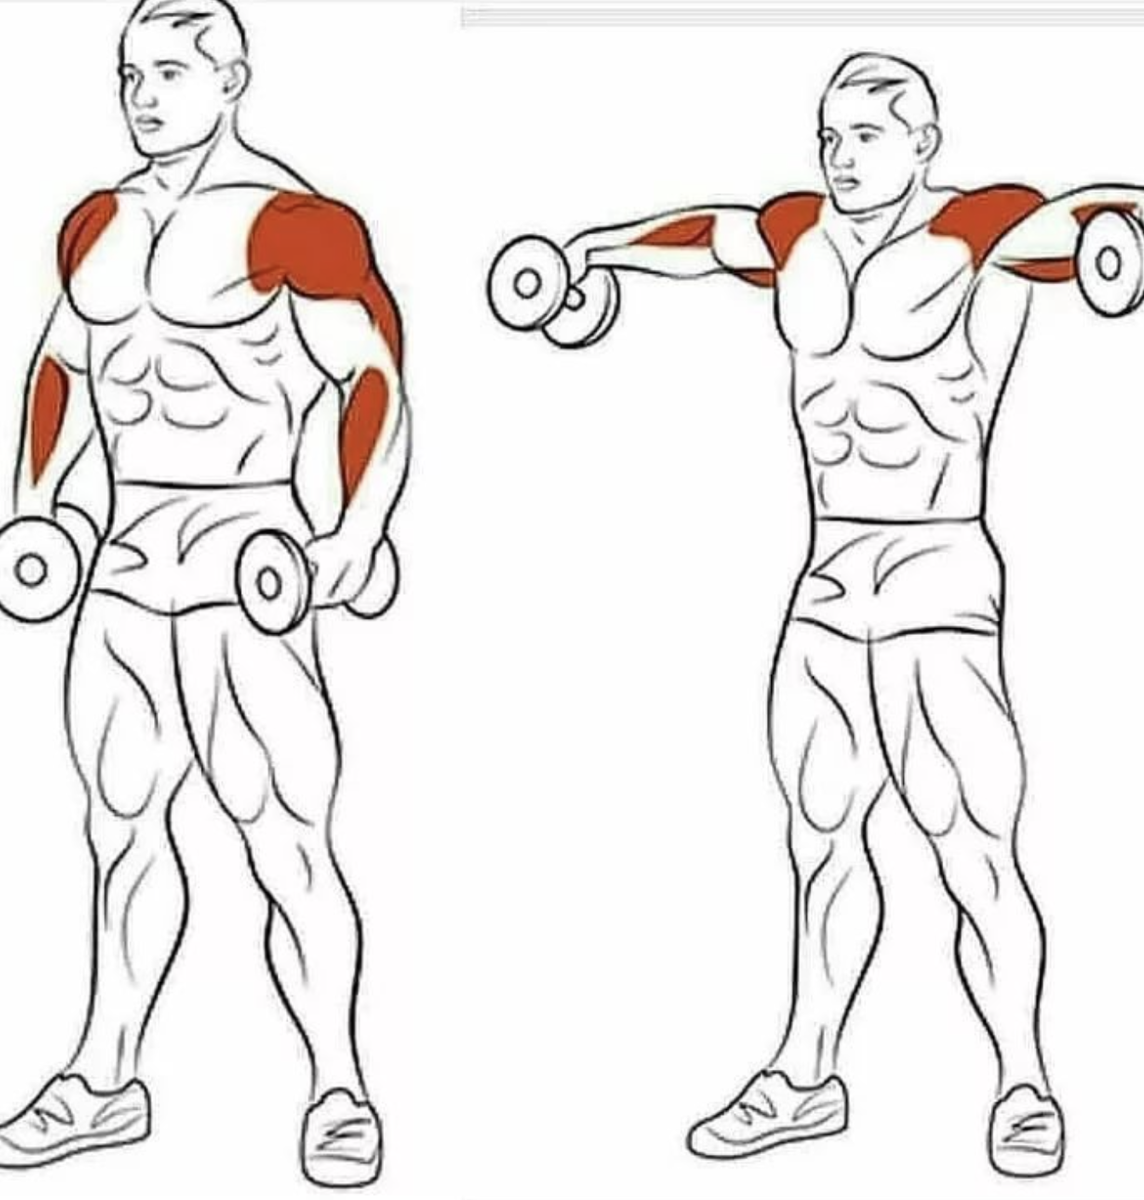 Упражнения на дельтовидные мышцы с гантелями. Упражнения для прокачки плеч. Упражнения на дельтовидные мышцы в тренажерном зале. Дельтовидная мышца плеча упражнения с гантелями.